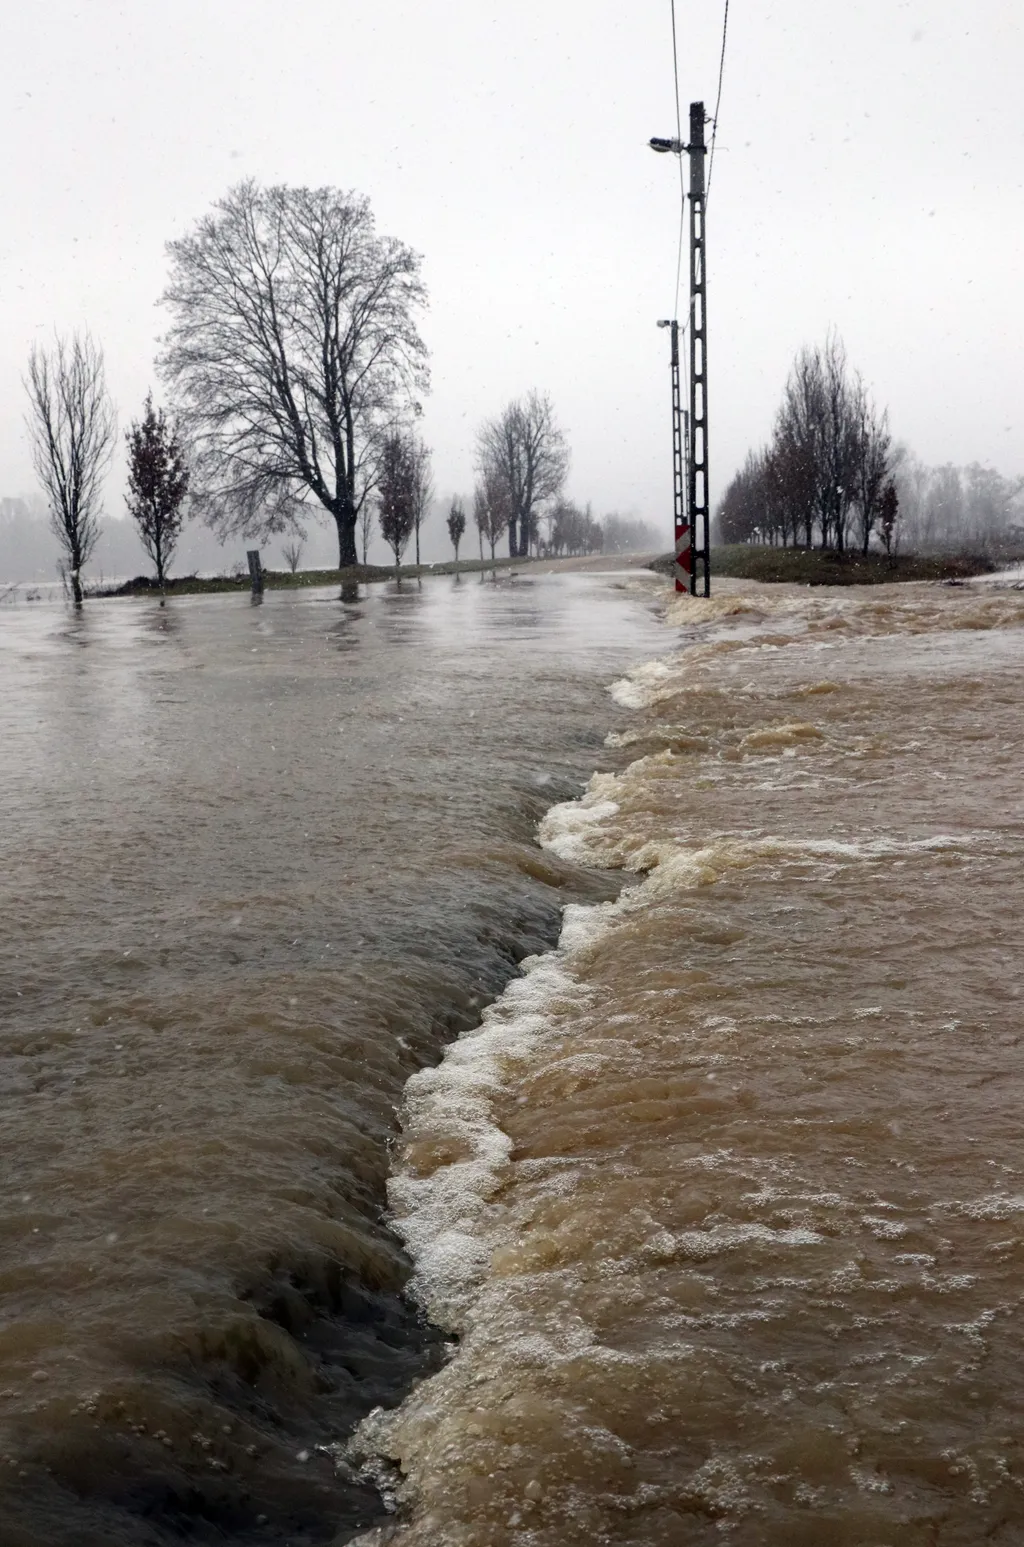 Utakat zártak le Borsodban a Sajó áradása miatt, galéria, 2021.02.09. 